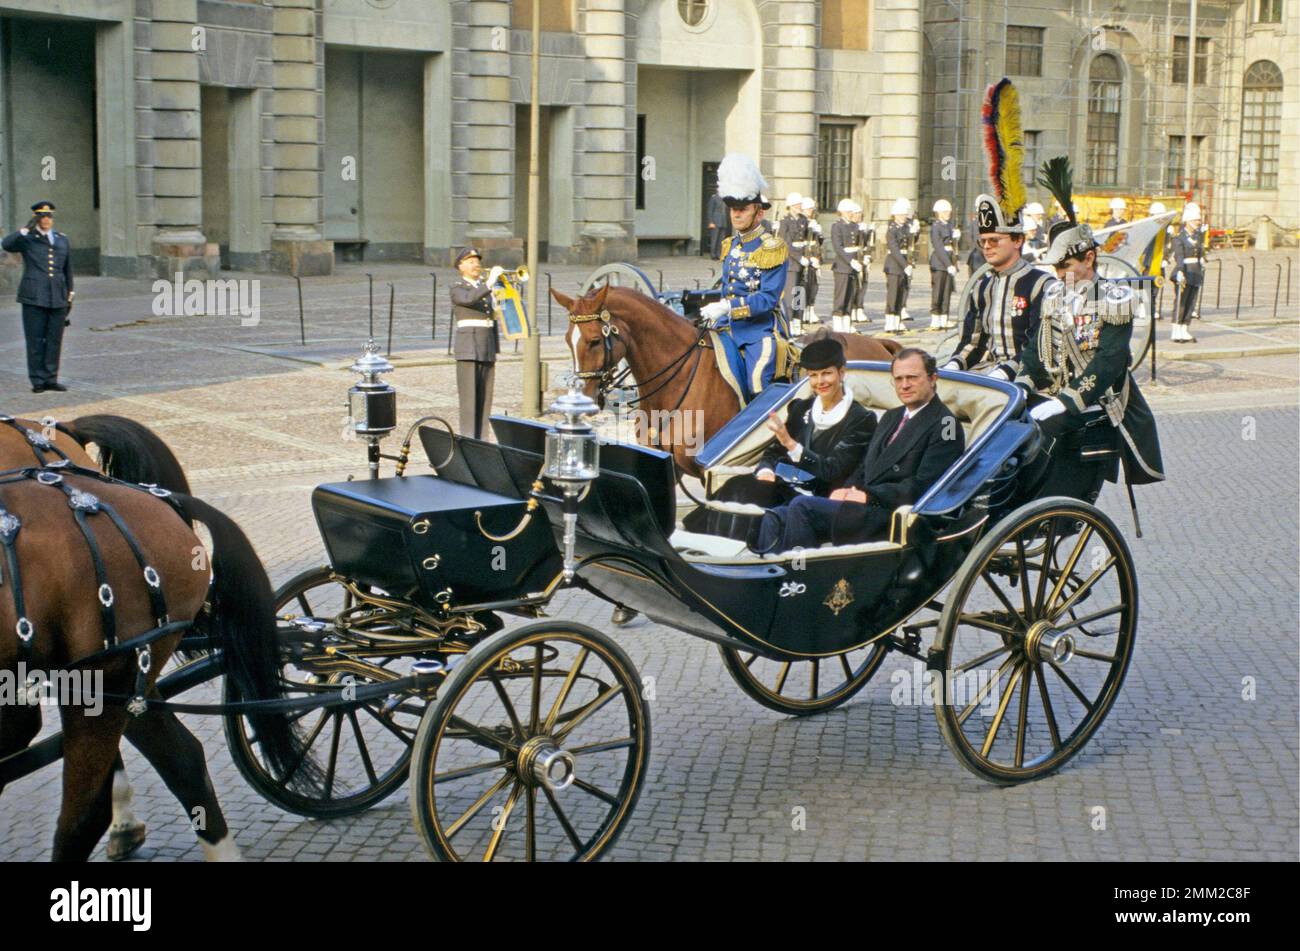 Il re Carlo XVI Gustaf e la regina Silvia Renate Sommerlath hanno raffigurato in una carrozza aperta durante il loro viaggio per assistere all'apertura formale del parlamento svedese. Gennaio 1985. Foto Stock